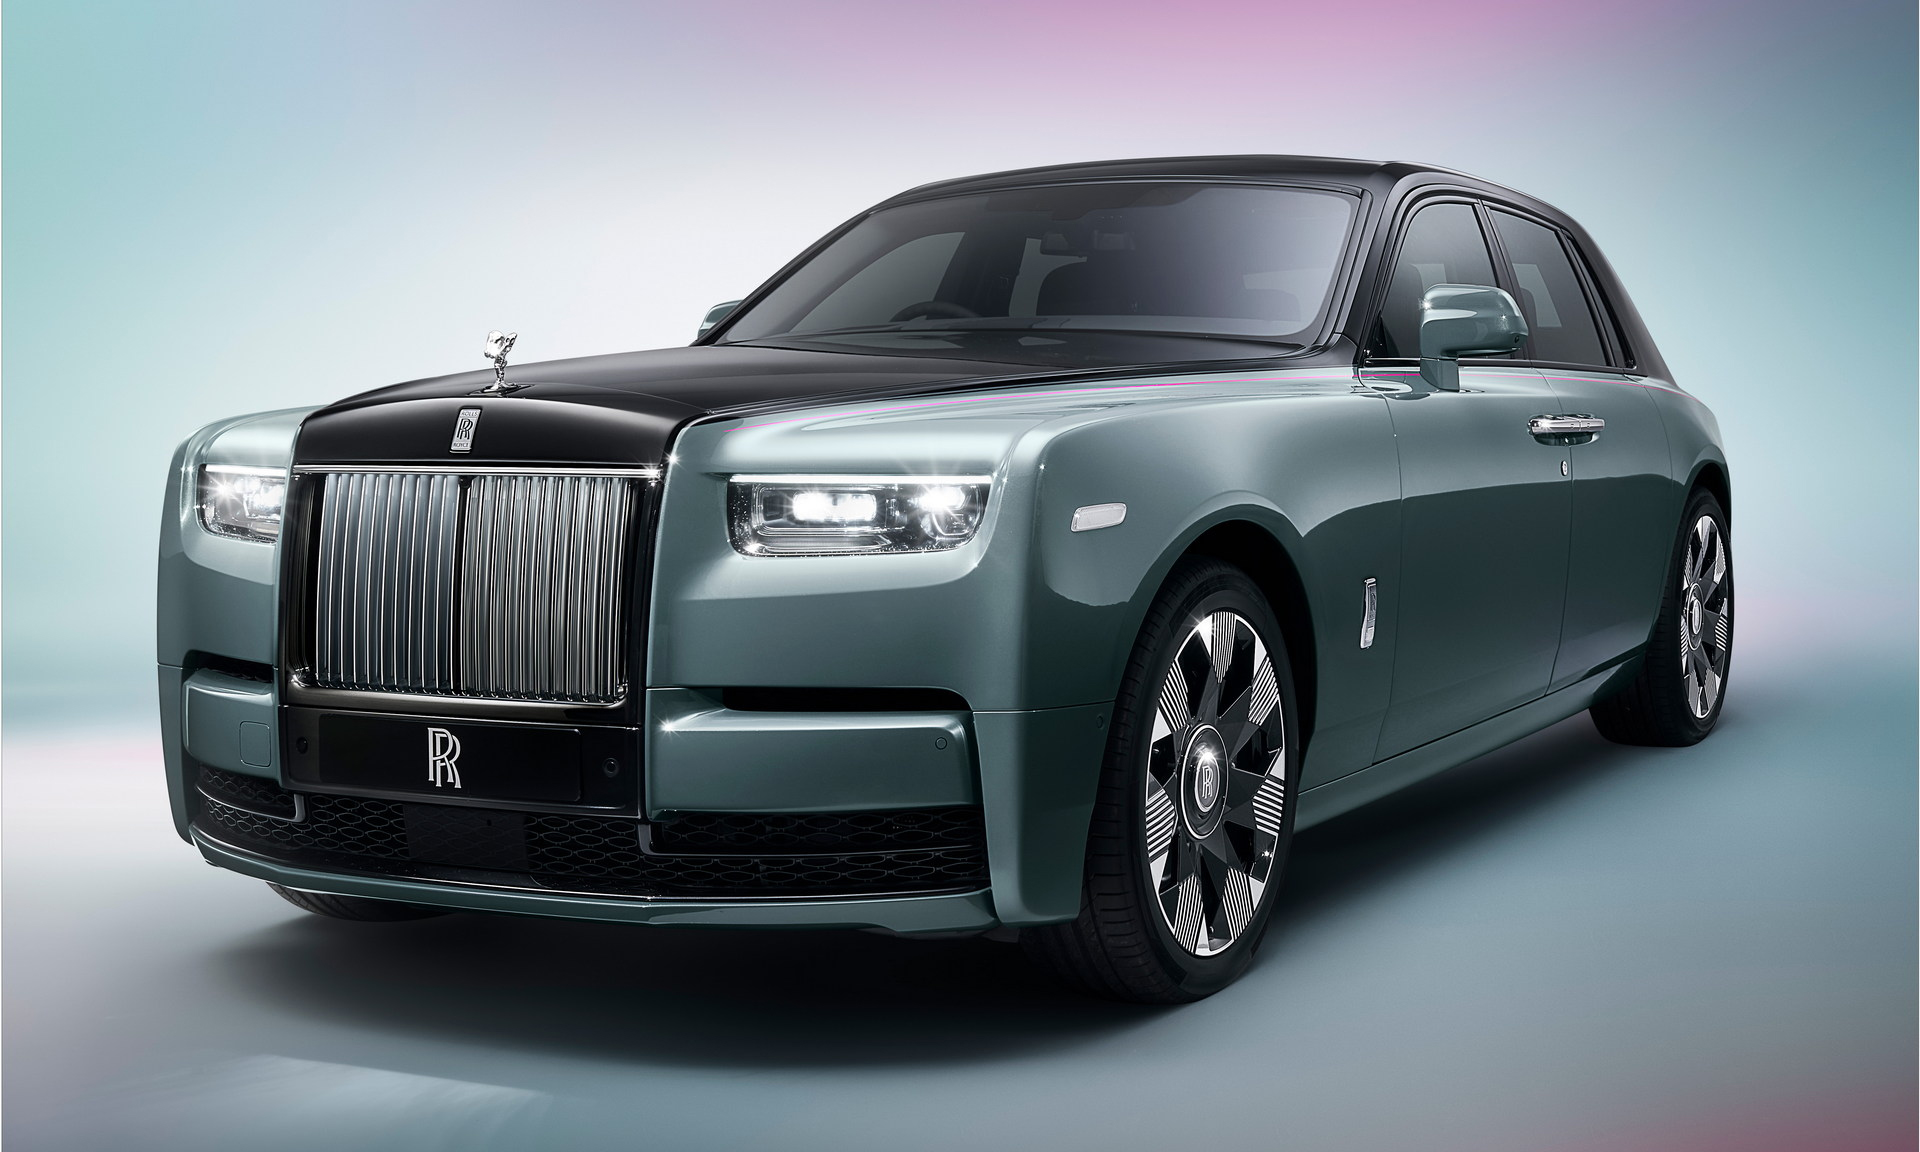 Khám phá hãng xe danh tiếng Rolls Royce với lịch sử hơn 100 năm